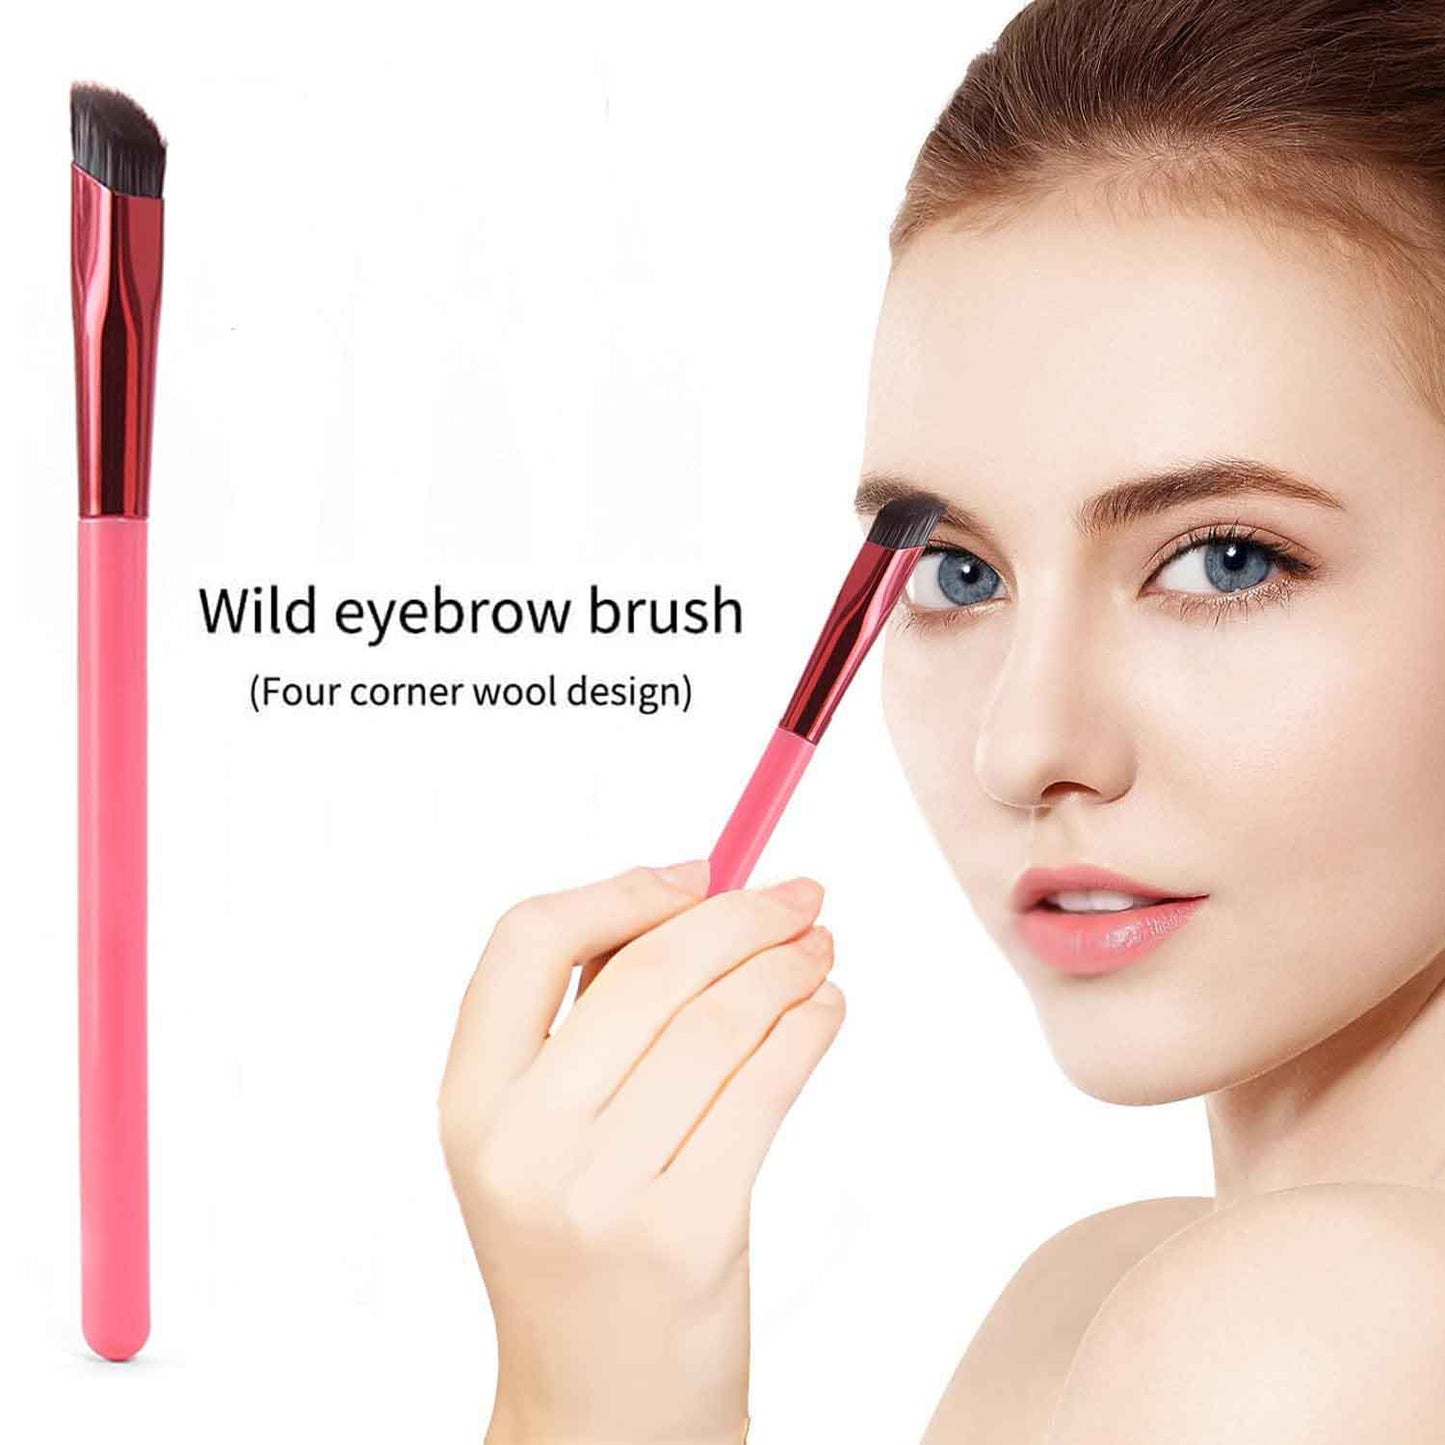 Wild Eyebrow Brush | Brushed up Eyebrows